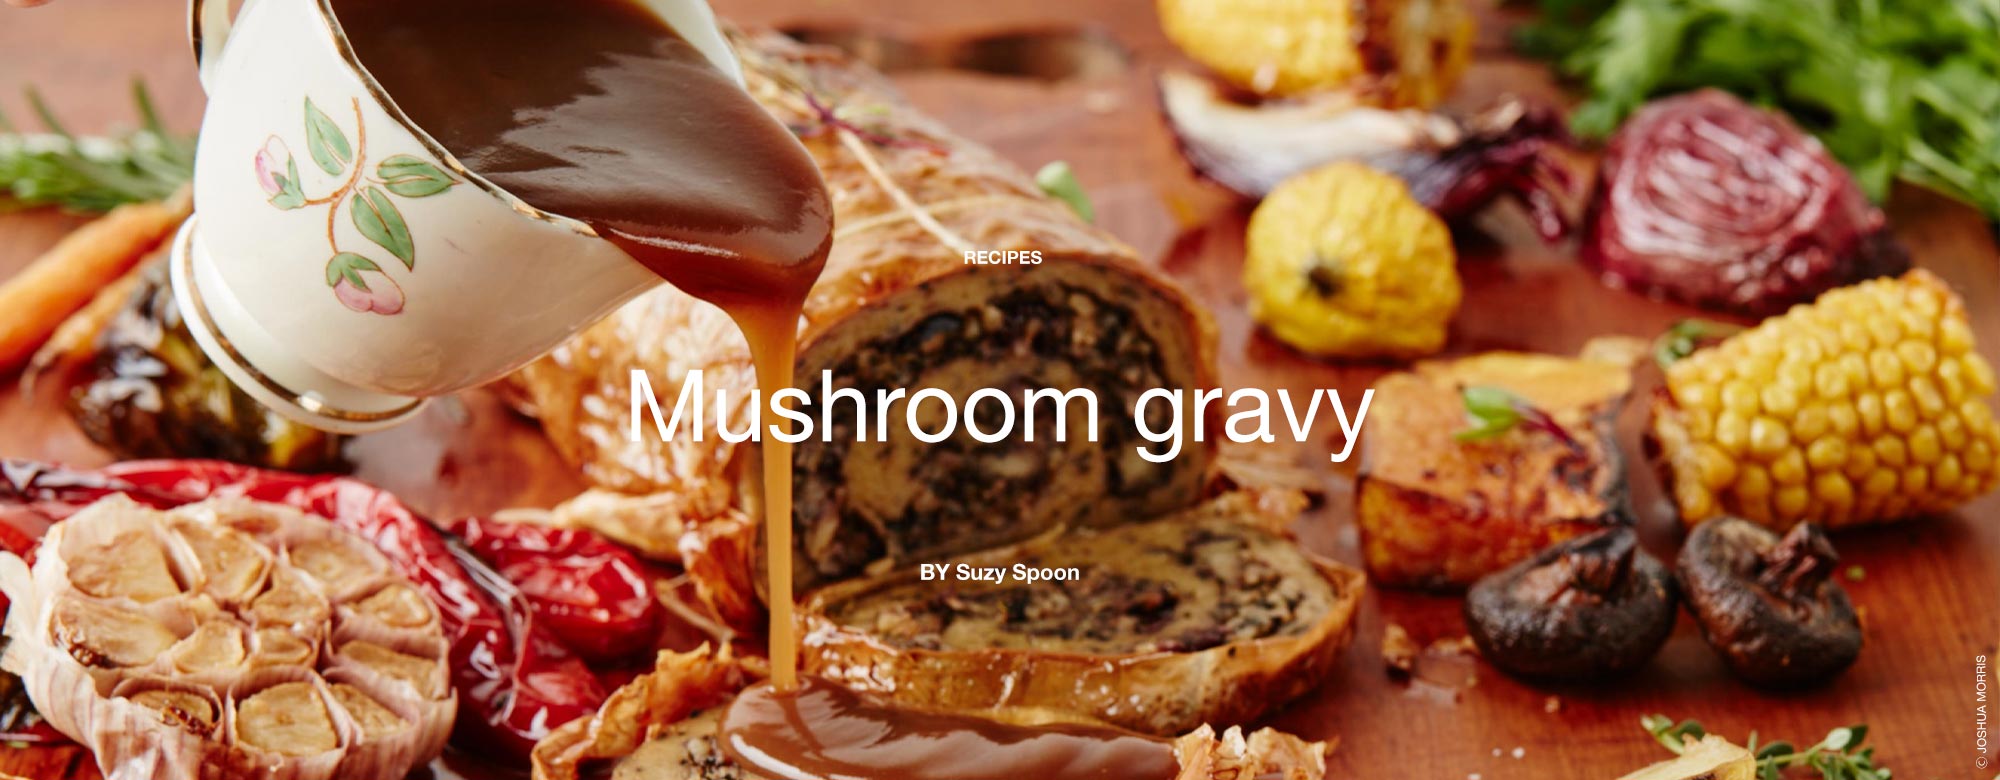 Mushroom gravy